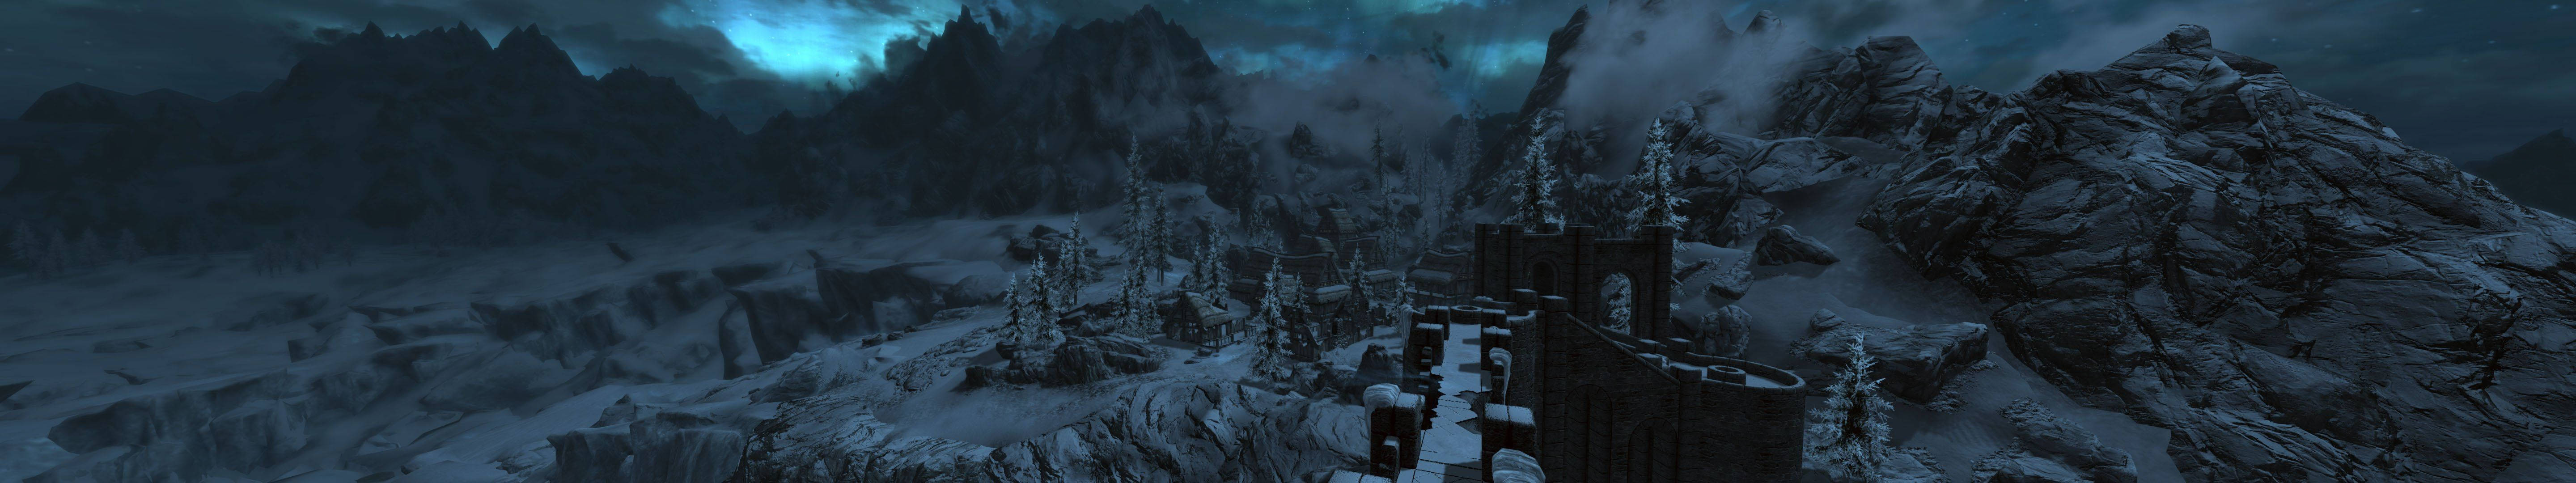 Dark Castle Mountain In Winter